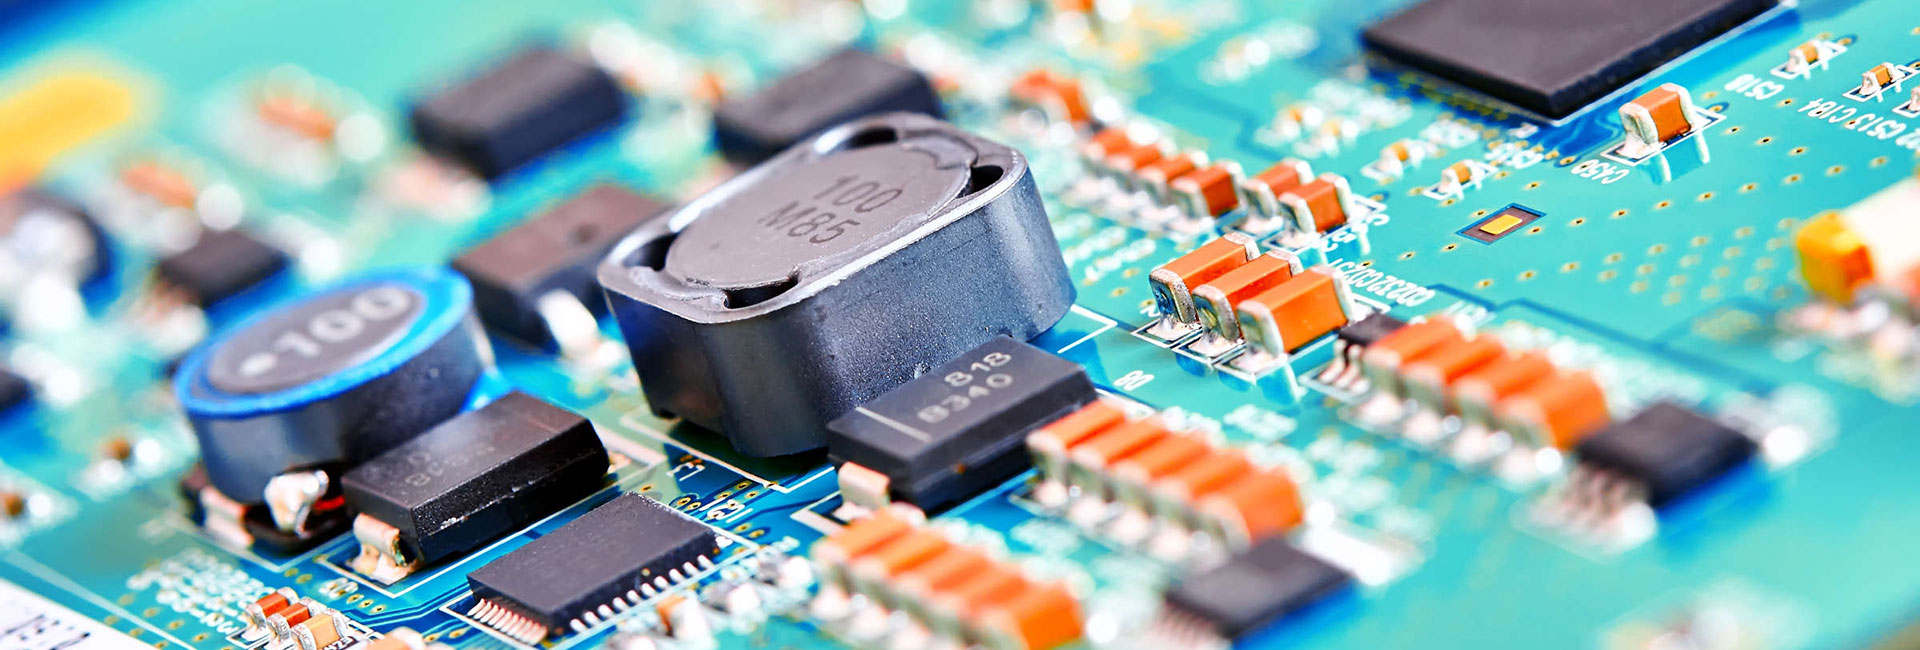 Progettazione, Produzione e Test di Schede Elettroniche per Sistemi Elettronici Embedded Custom, con realizzazione del PCB e Industrializzazione